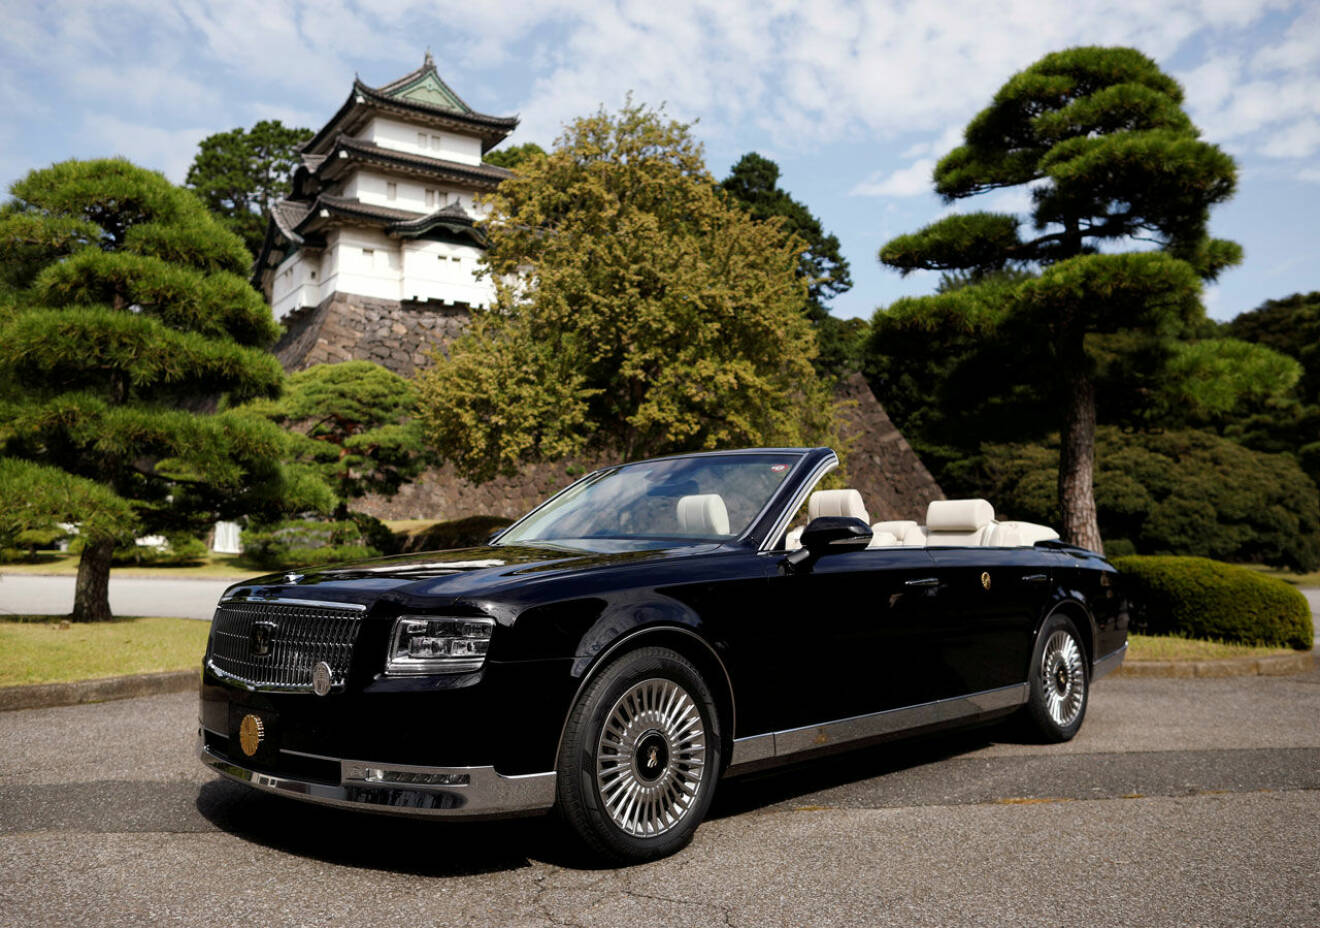 Japans nya kejsare skulle ha åkt kortege i denna öppna Toyota, men nu är kortegen framflyttad.